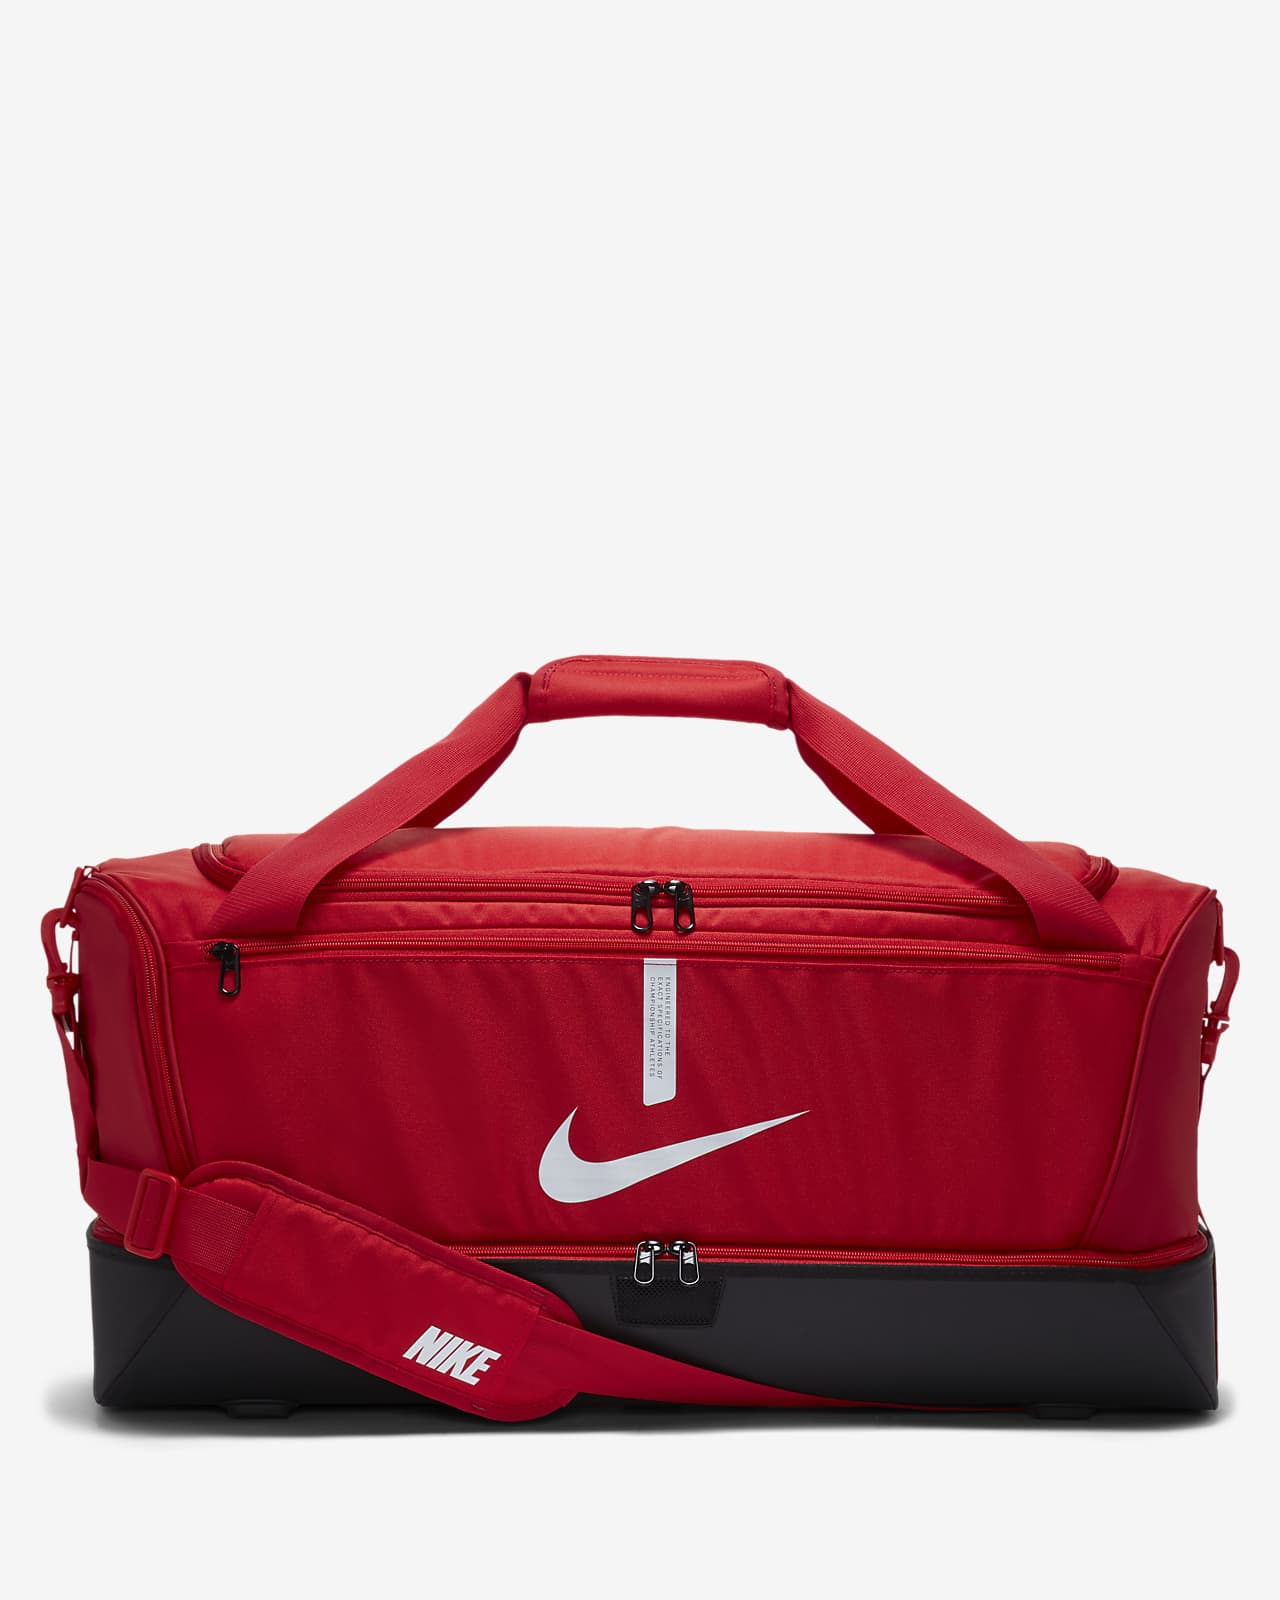 Τσάντα γυμναστηρίου για ποδόσφαιρο με σκληρή βάση Nike Academy Team (μέγεθος Large, 59L)